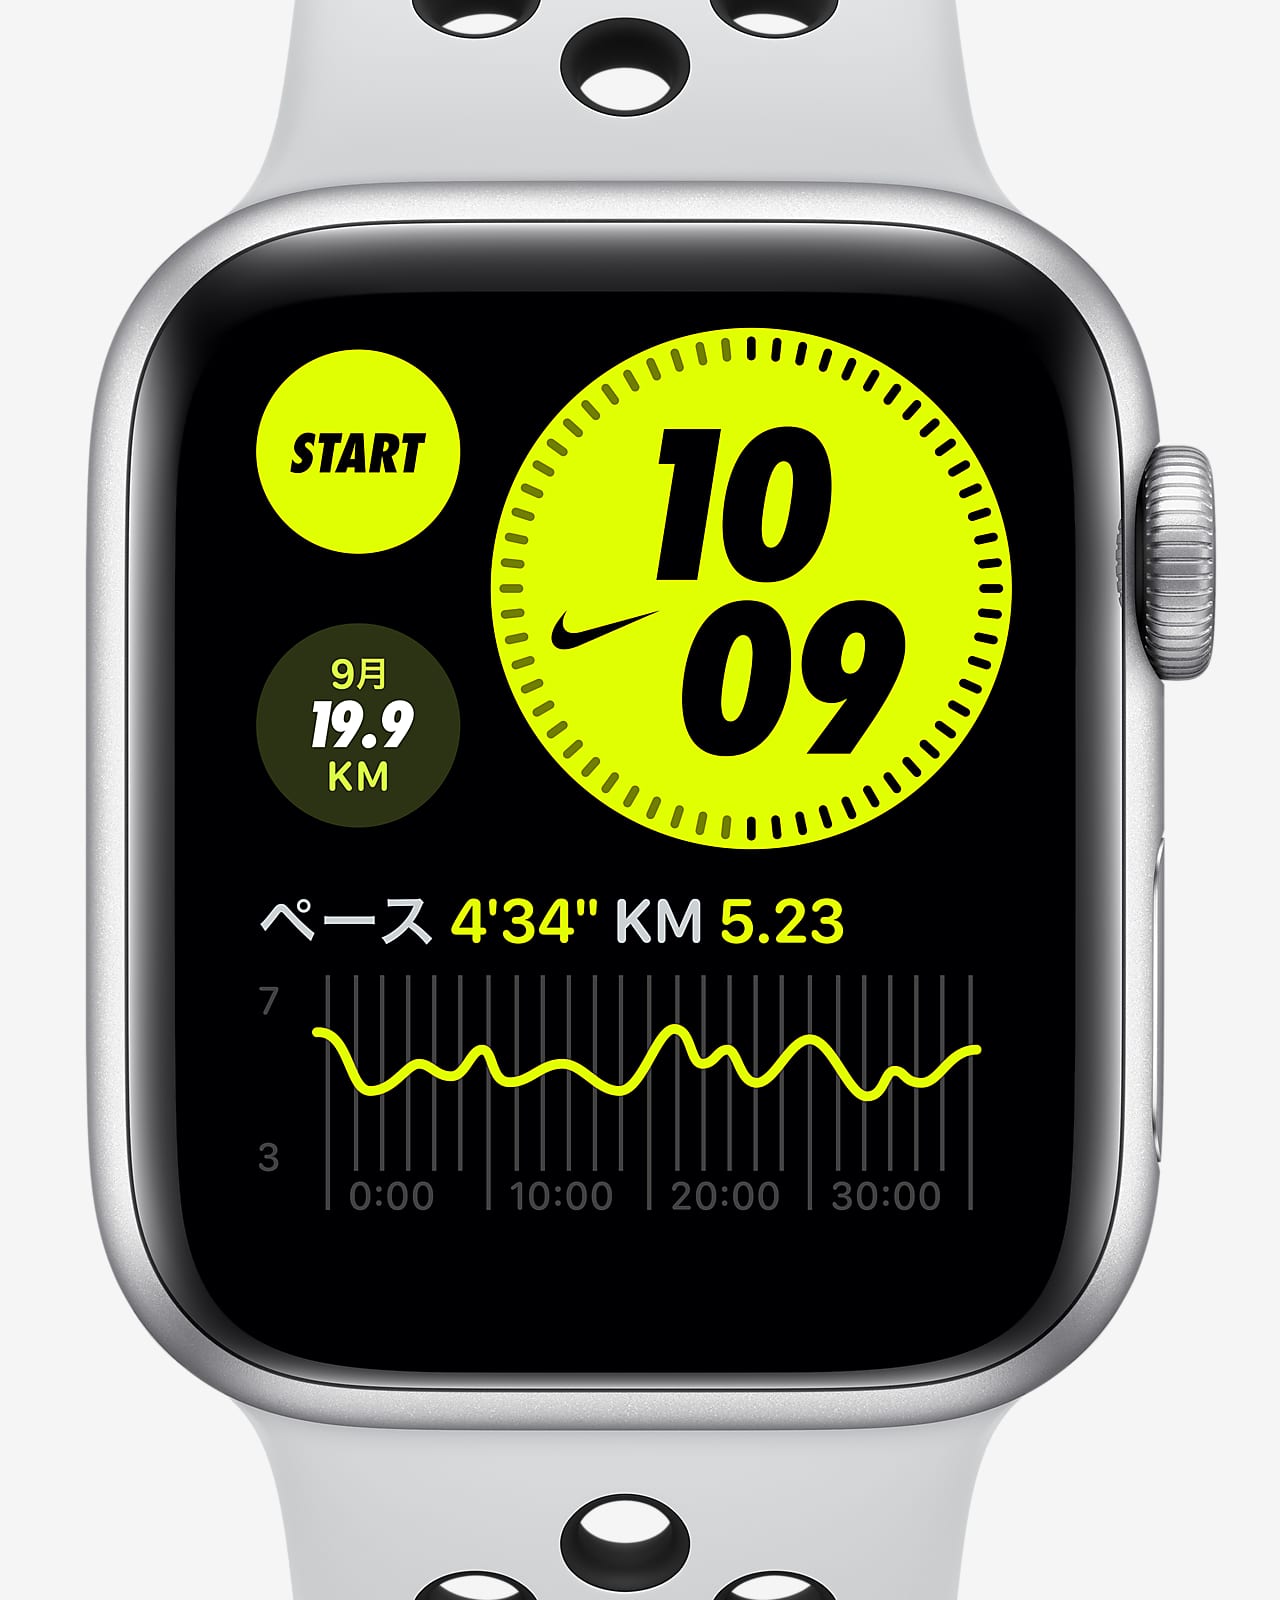 Nike Apple Watch SERIES6 GPS 44mm